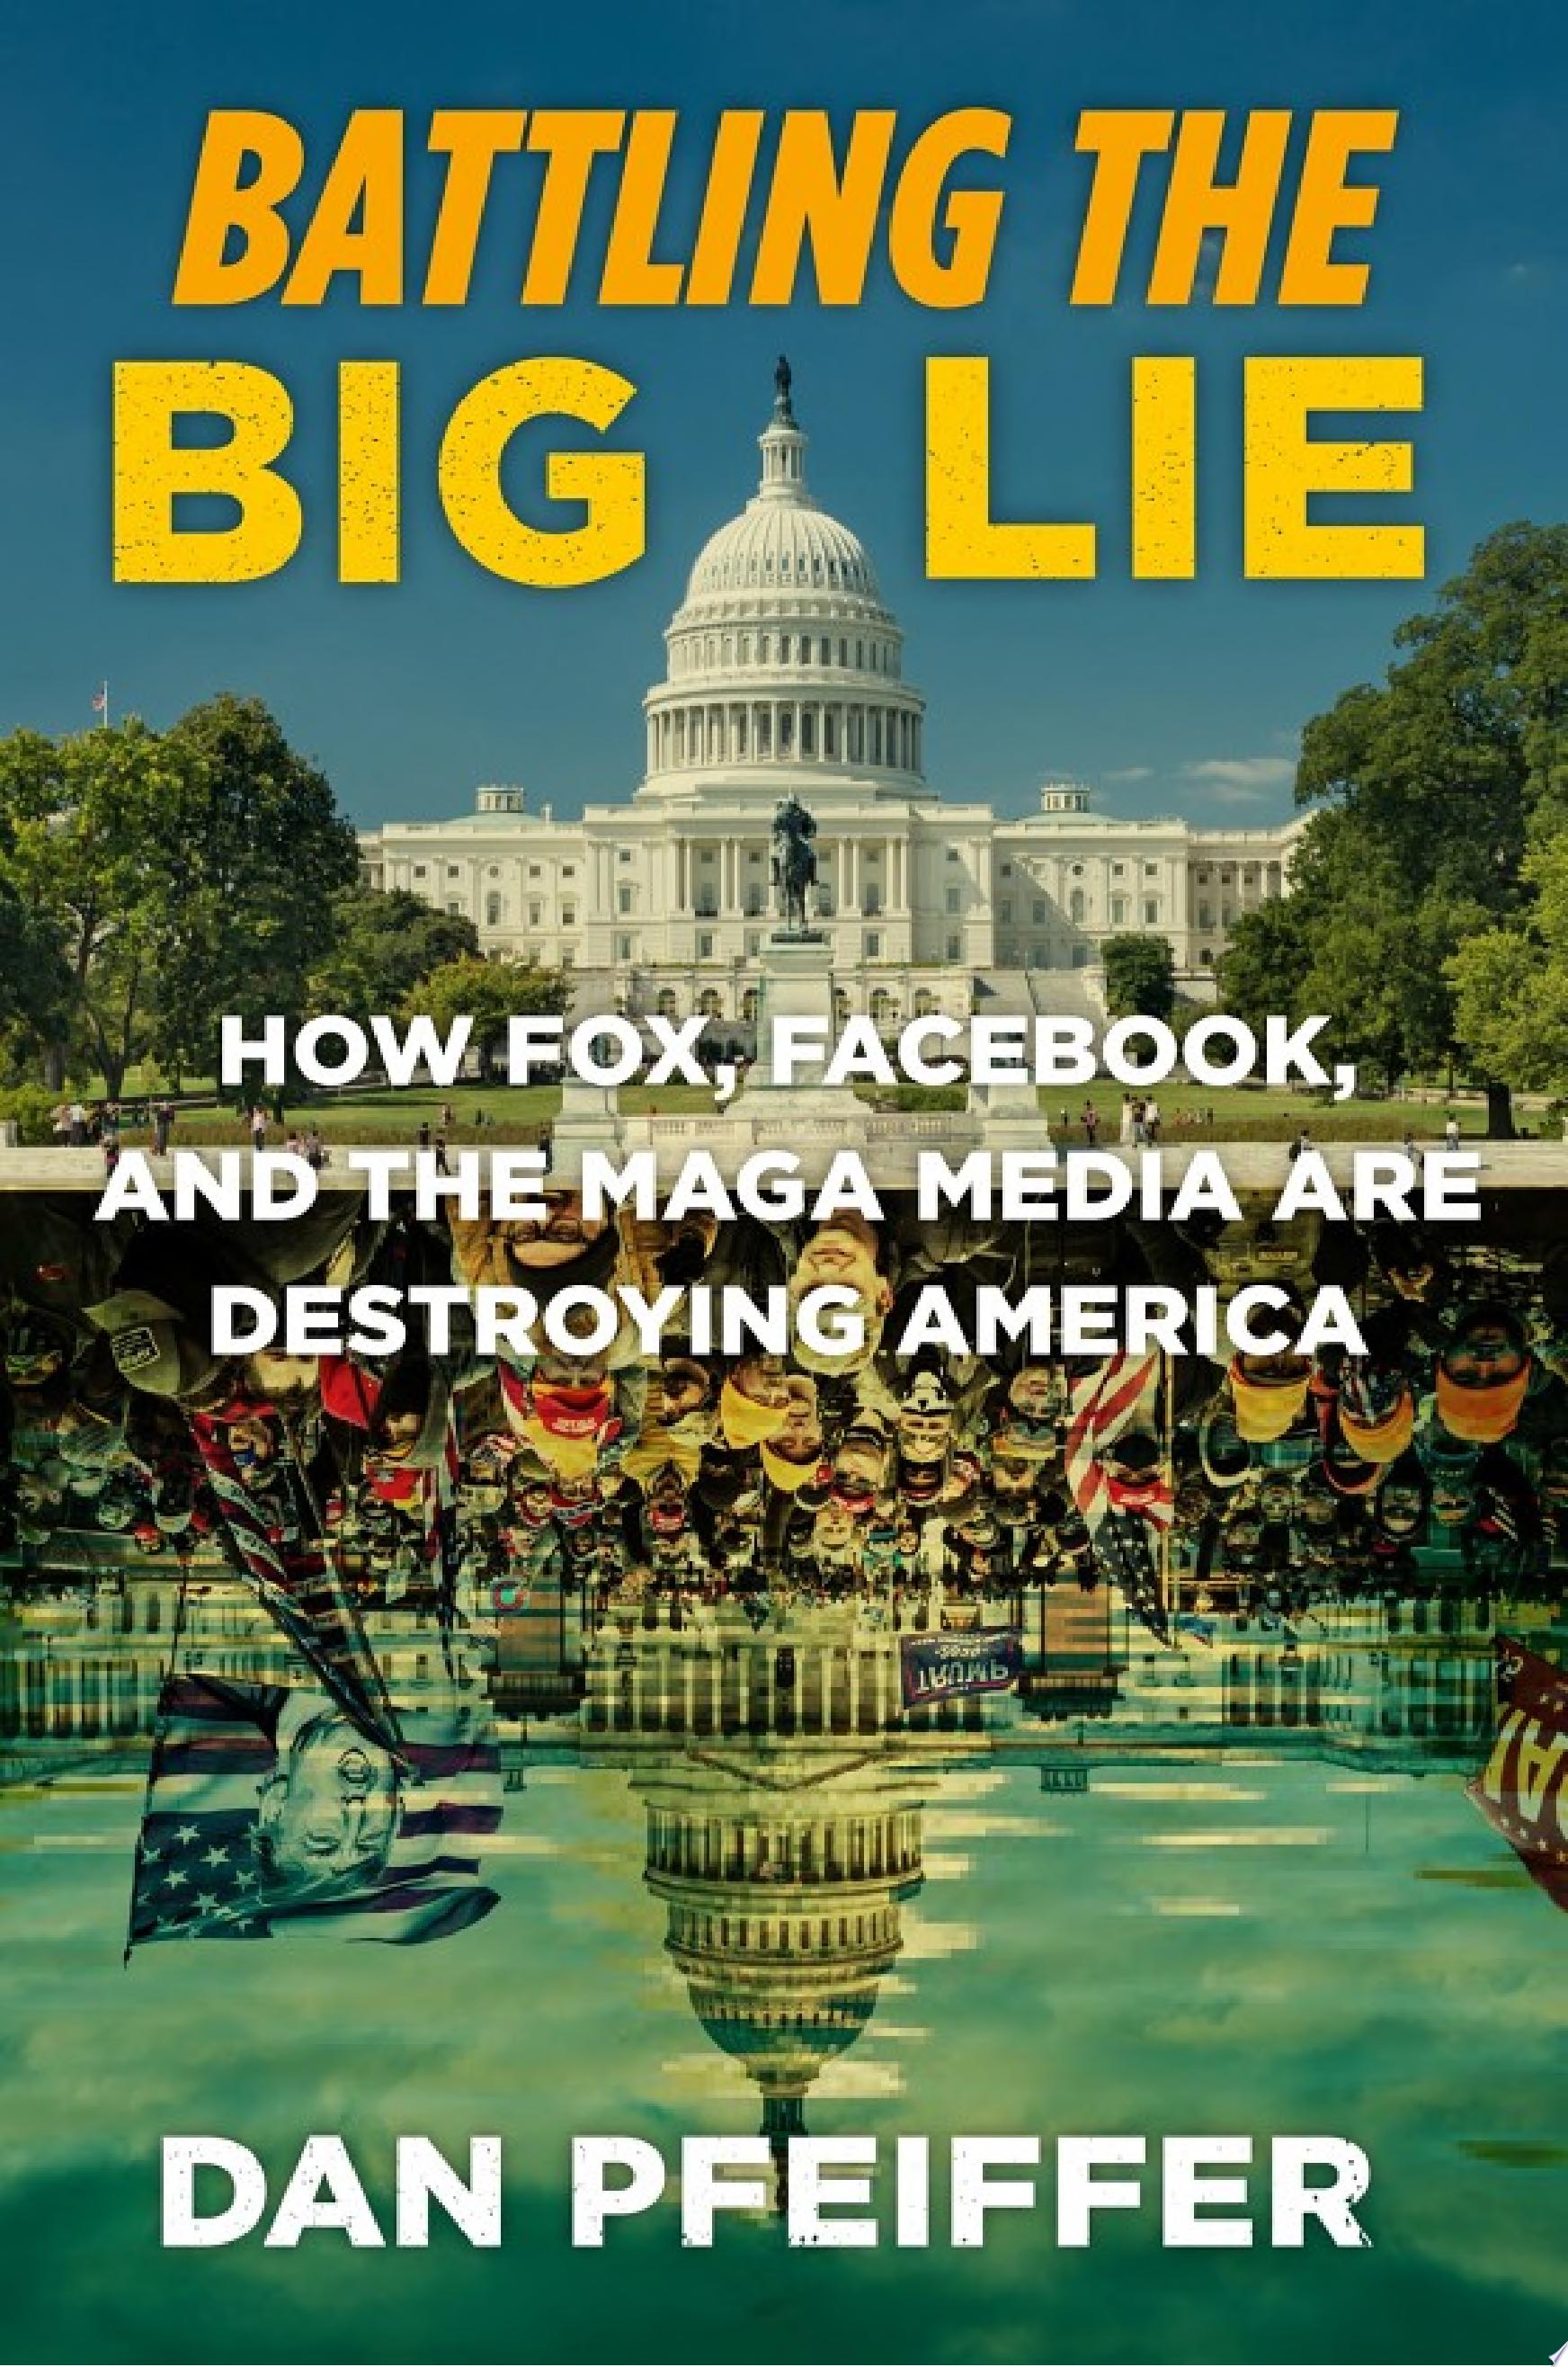 Image for "Battling the Big Lie"